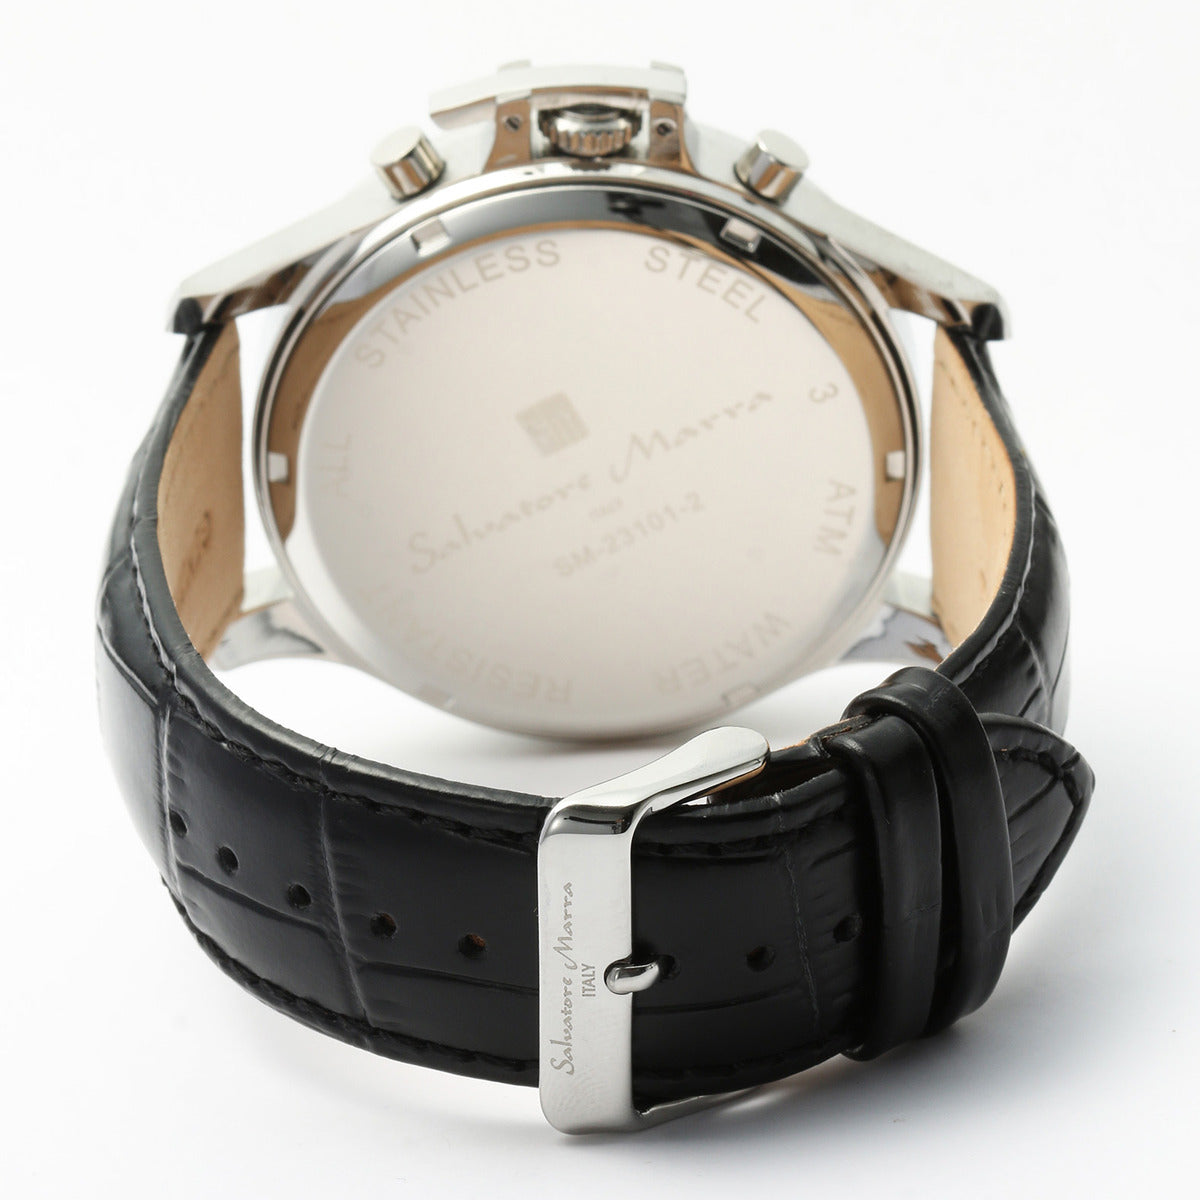 サルバトーレマーラ Salavatore Marra 腕時計 SM23101 SSBK マルチ